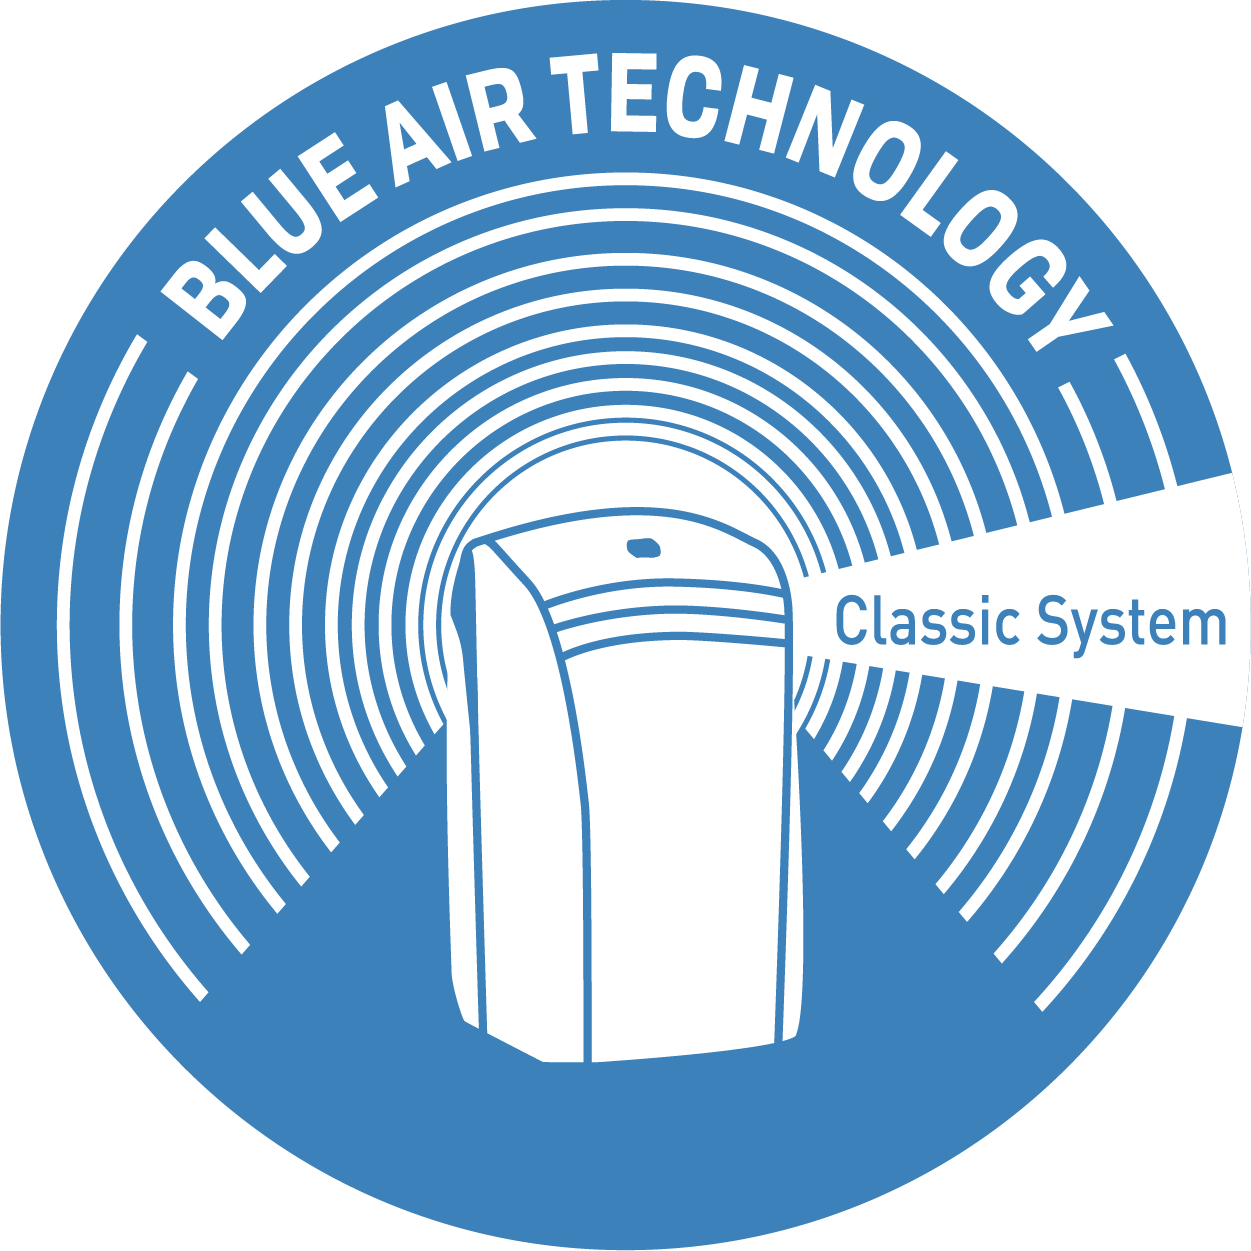 Καινοτόμος τεχνολογία που παράγει έναν υψηλό, βαθύ πίδακα αέρα που δεν χτυπά απευθείας τους ενοίκους, αλλά εξασφαλίζει την τέλεια κατανομή του αέρα στο δωμάτιο.